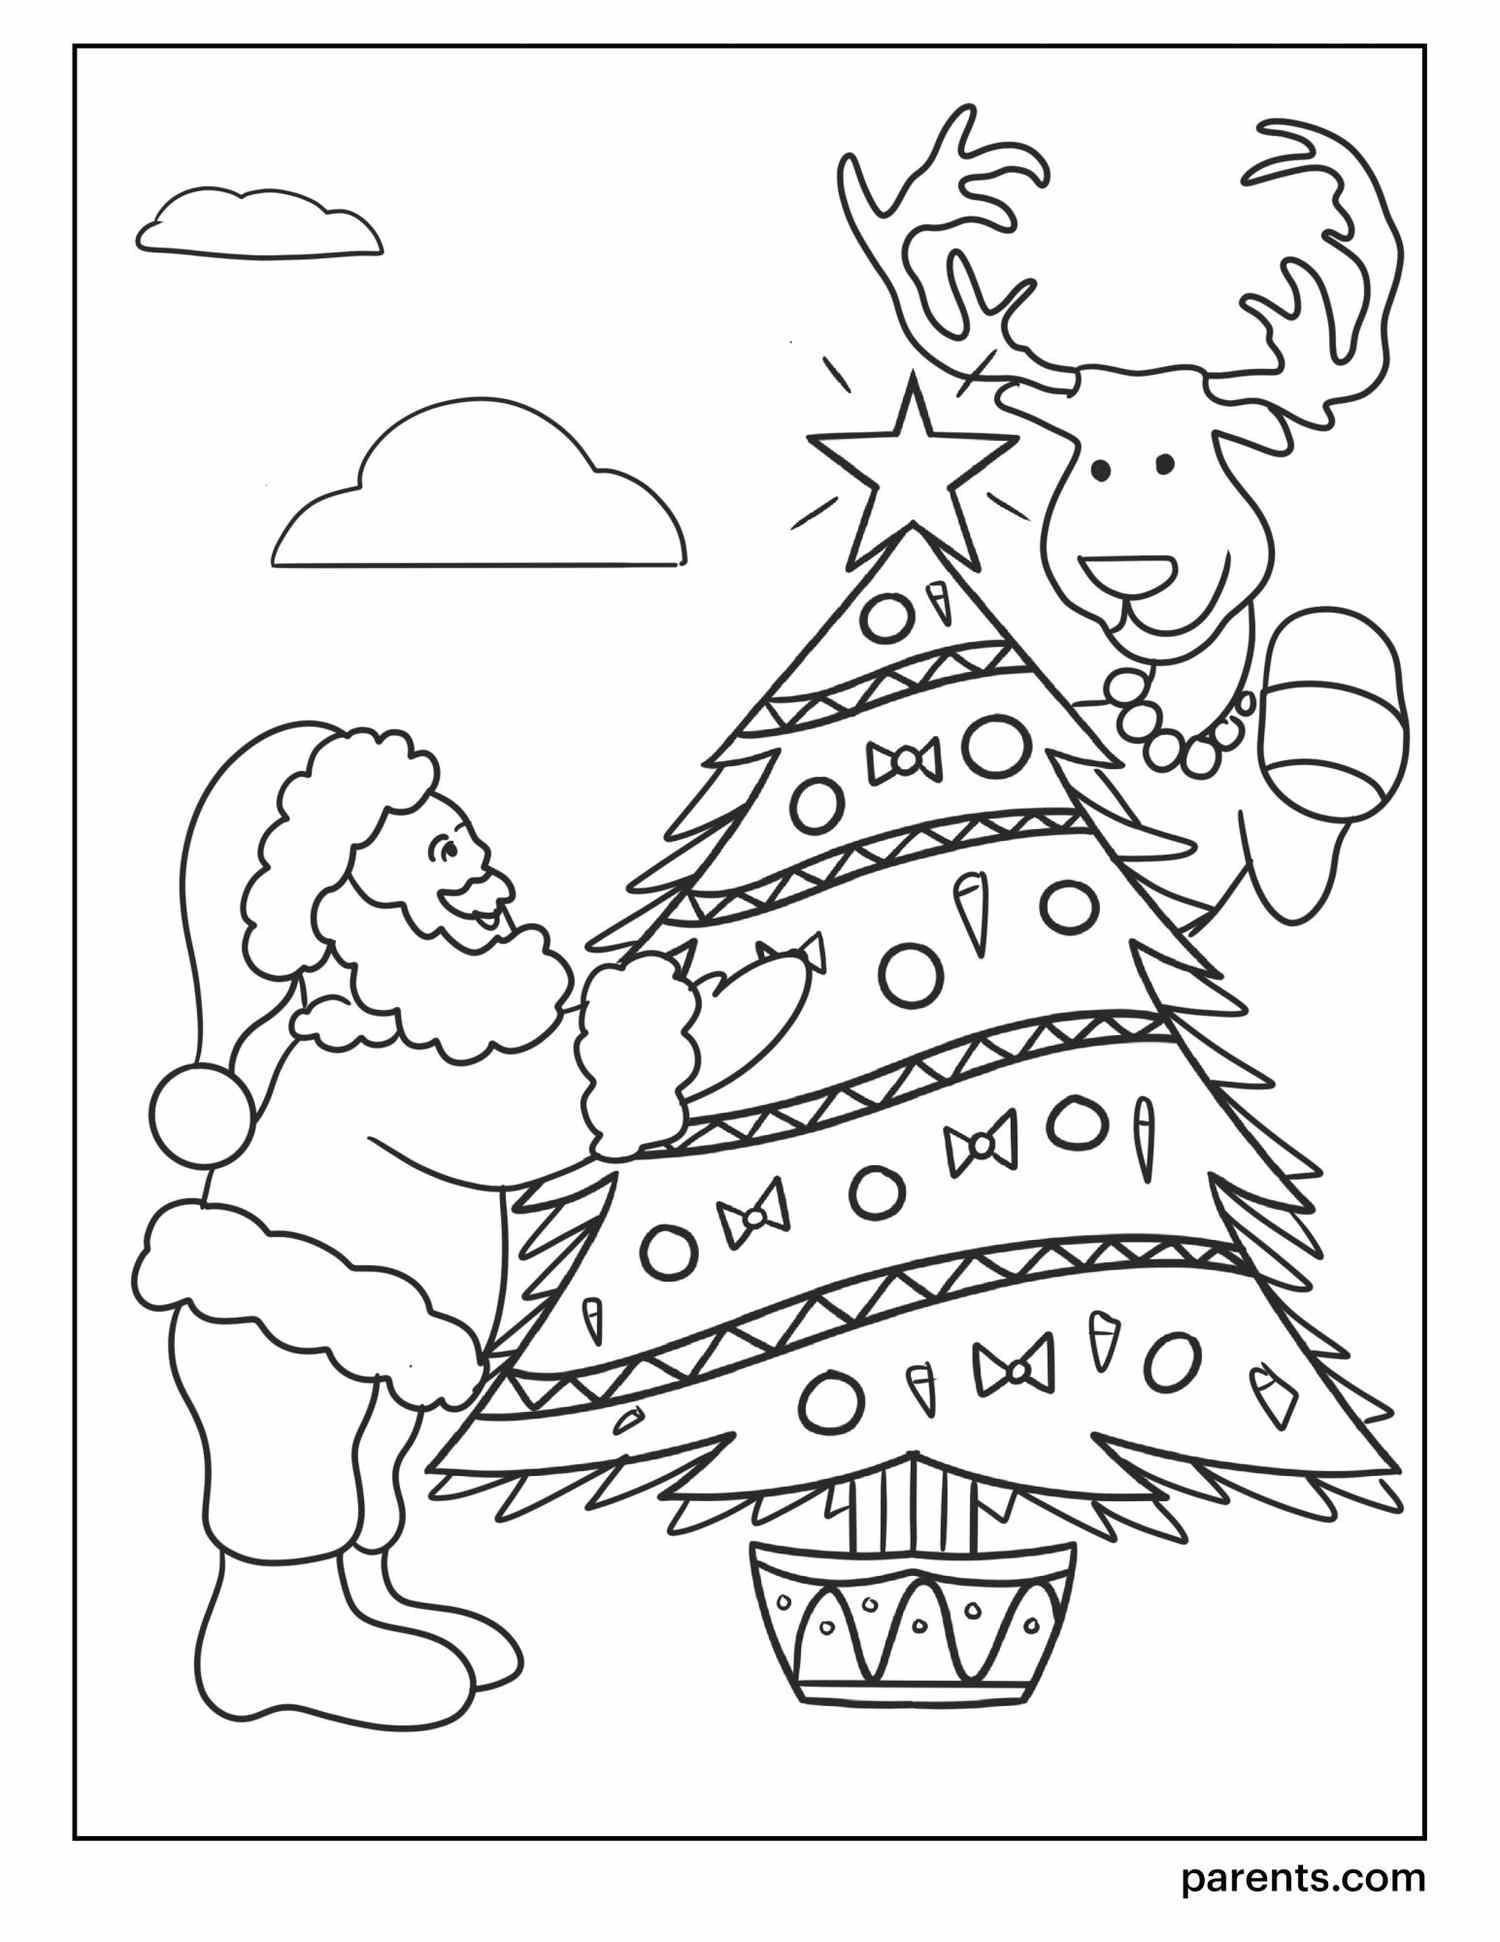 Coloring Page Of Christmas Tree / Christmas Coloring Pages For Preschoolers Best Coloring Pages For Kids Christmas Tree Coloring Page Printable Christmas Coloring Pages Christmas Coloring Pages / Free coloring pages to print or color online.